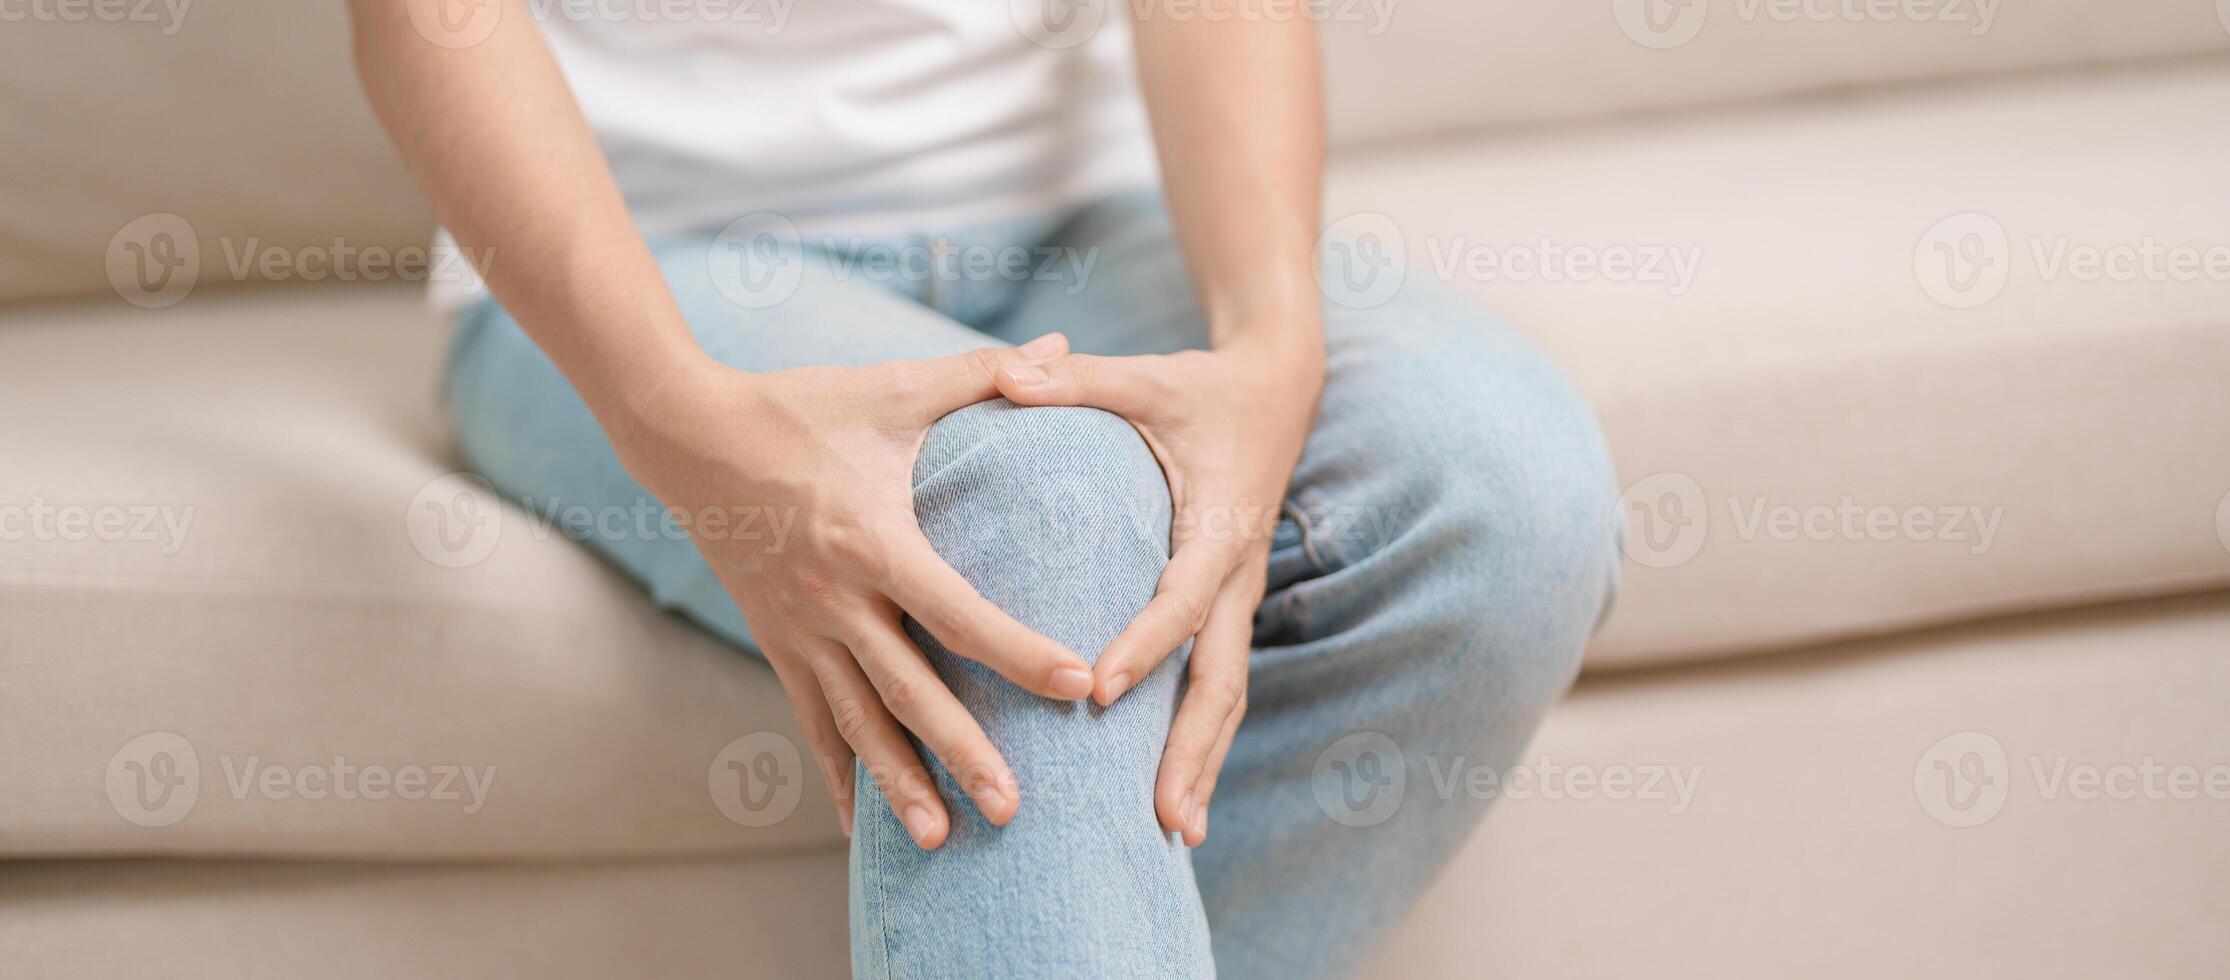 kvinna har knä värk och muskel smärta på grund av till löpare knä eller patellofemoral smärta syndrom, artros, artrit, reumatism och patellar tendinit. medicinsk begrepp foto